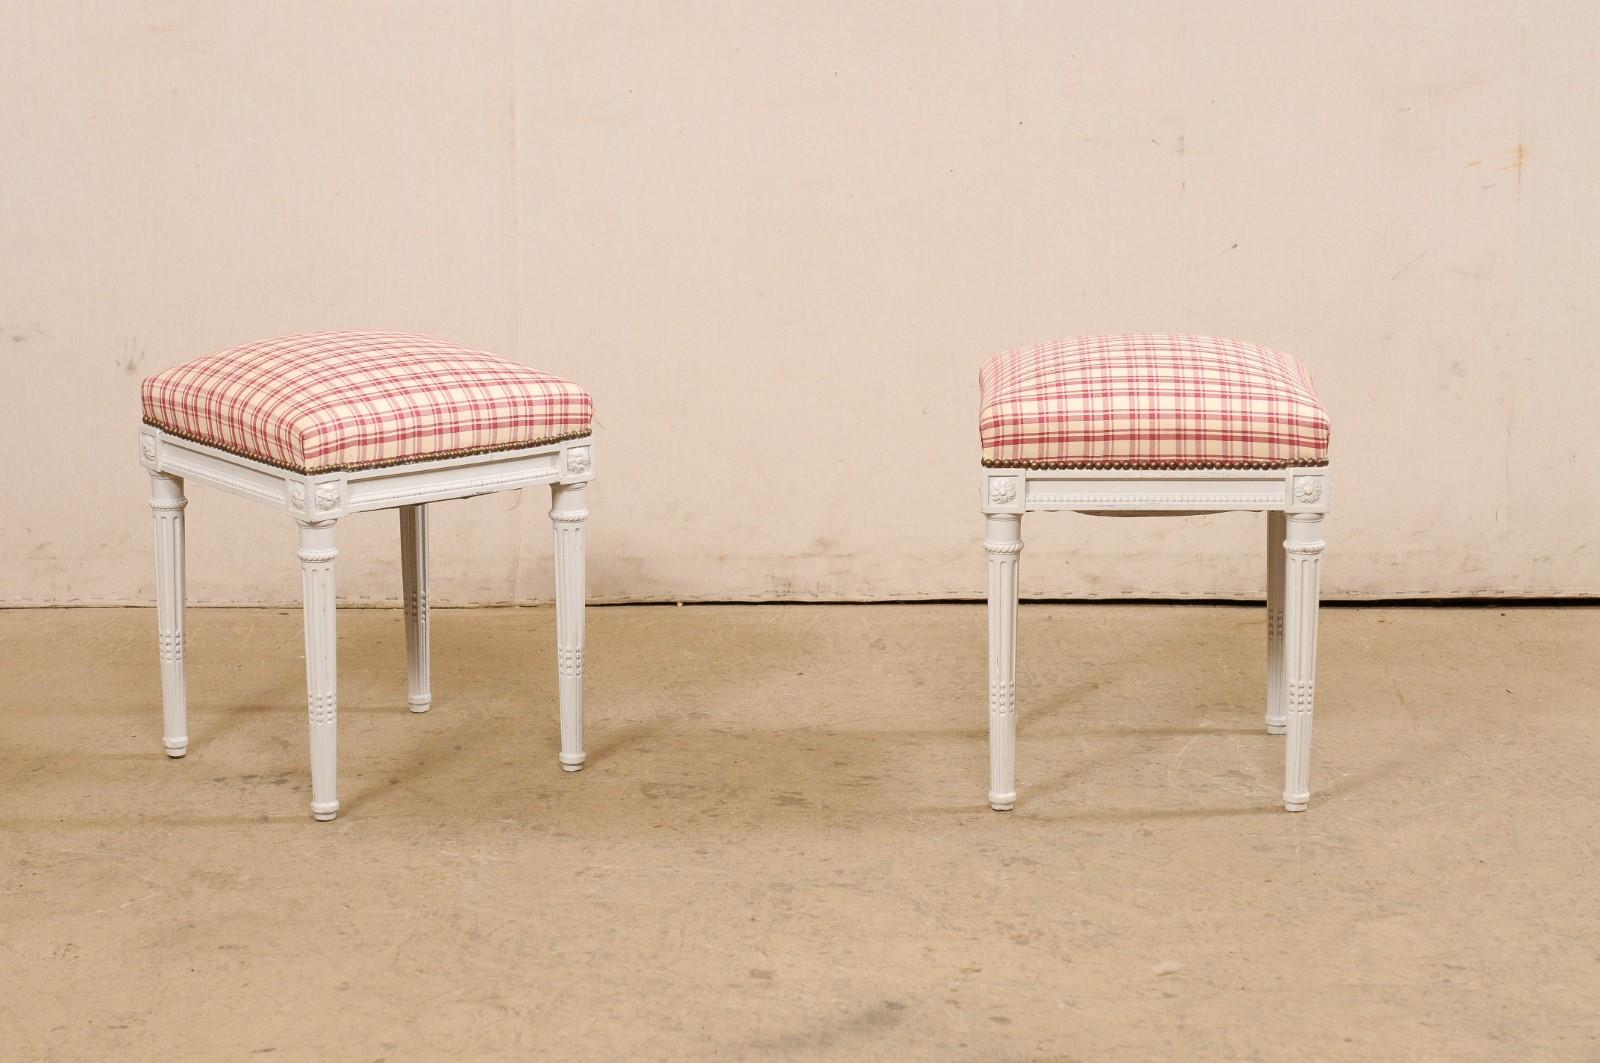 Paire de tabourets suédois en bois peint avec sièges rembourrés, du milieu du 20e siècle. Ces tabourets vintage de Suède présentent des sièges rembourrés carrés qui s'assoient sans un tablier qui présente une moulure linéaire, accentuée par une